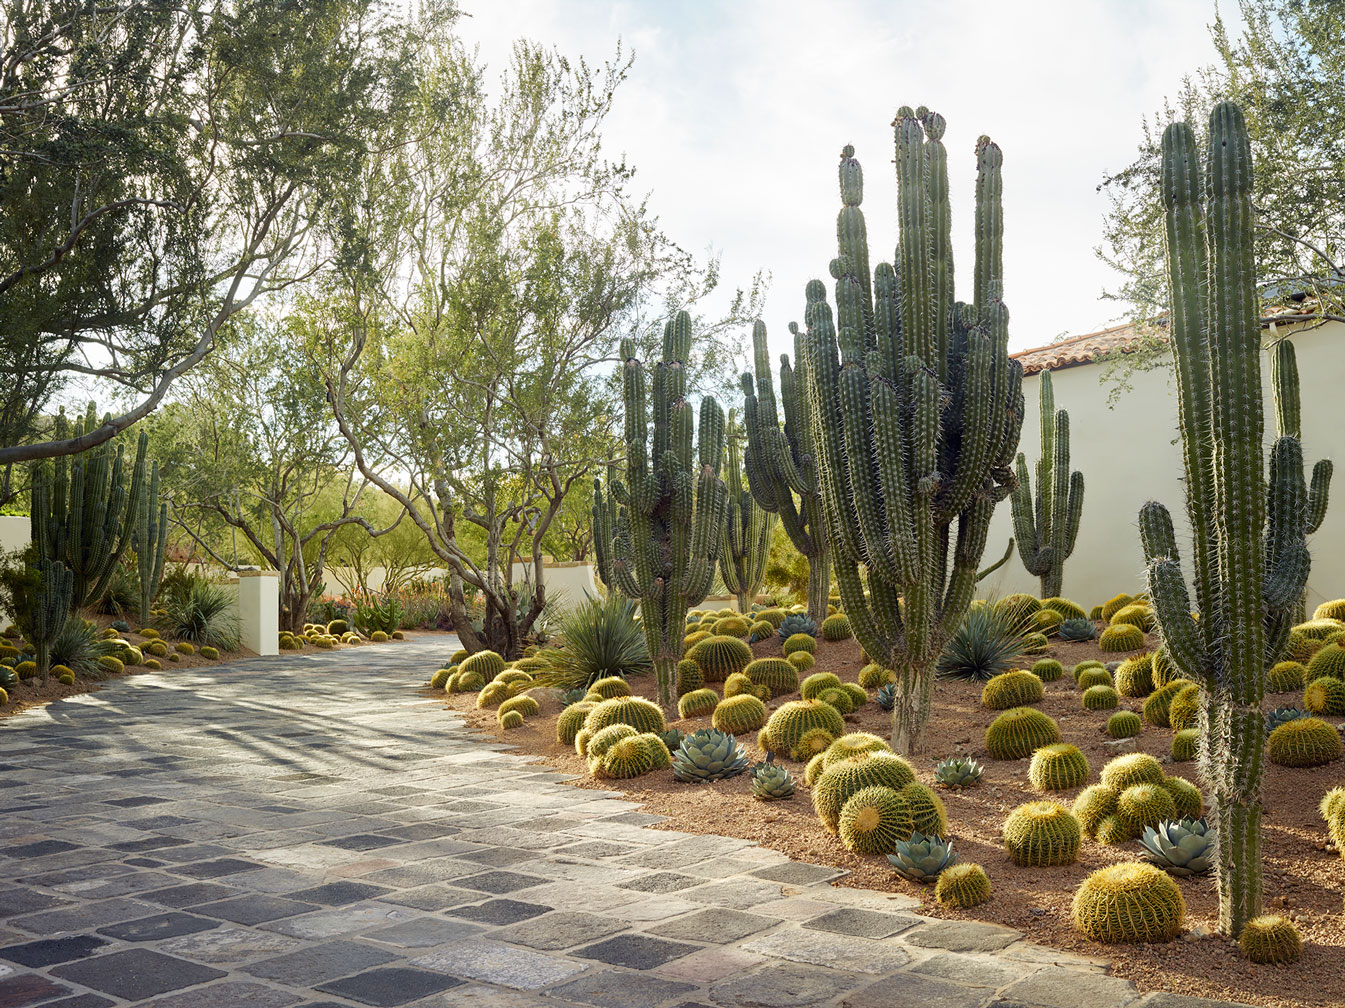 House of Desert Gardens - Cacti